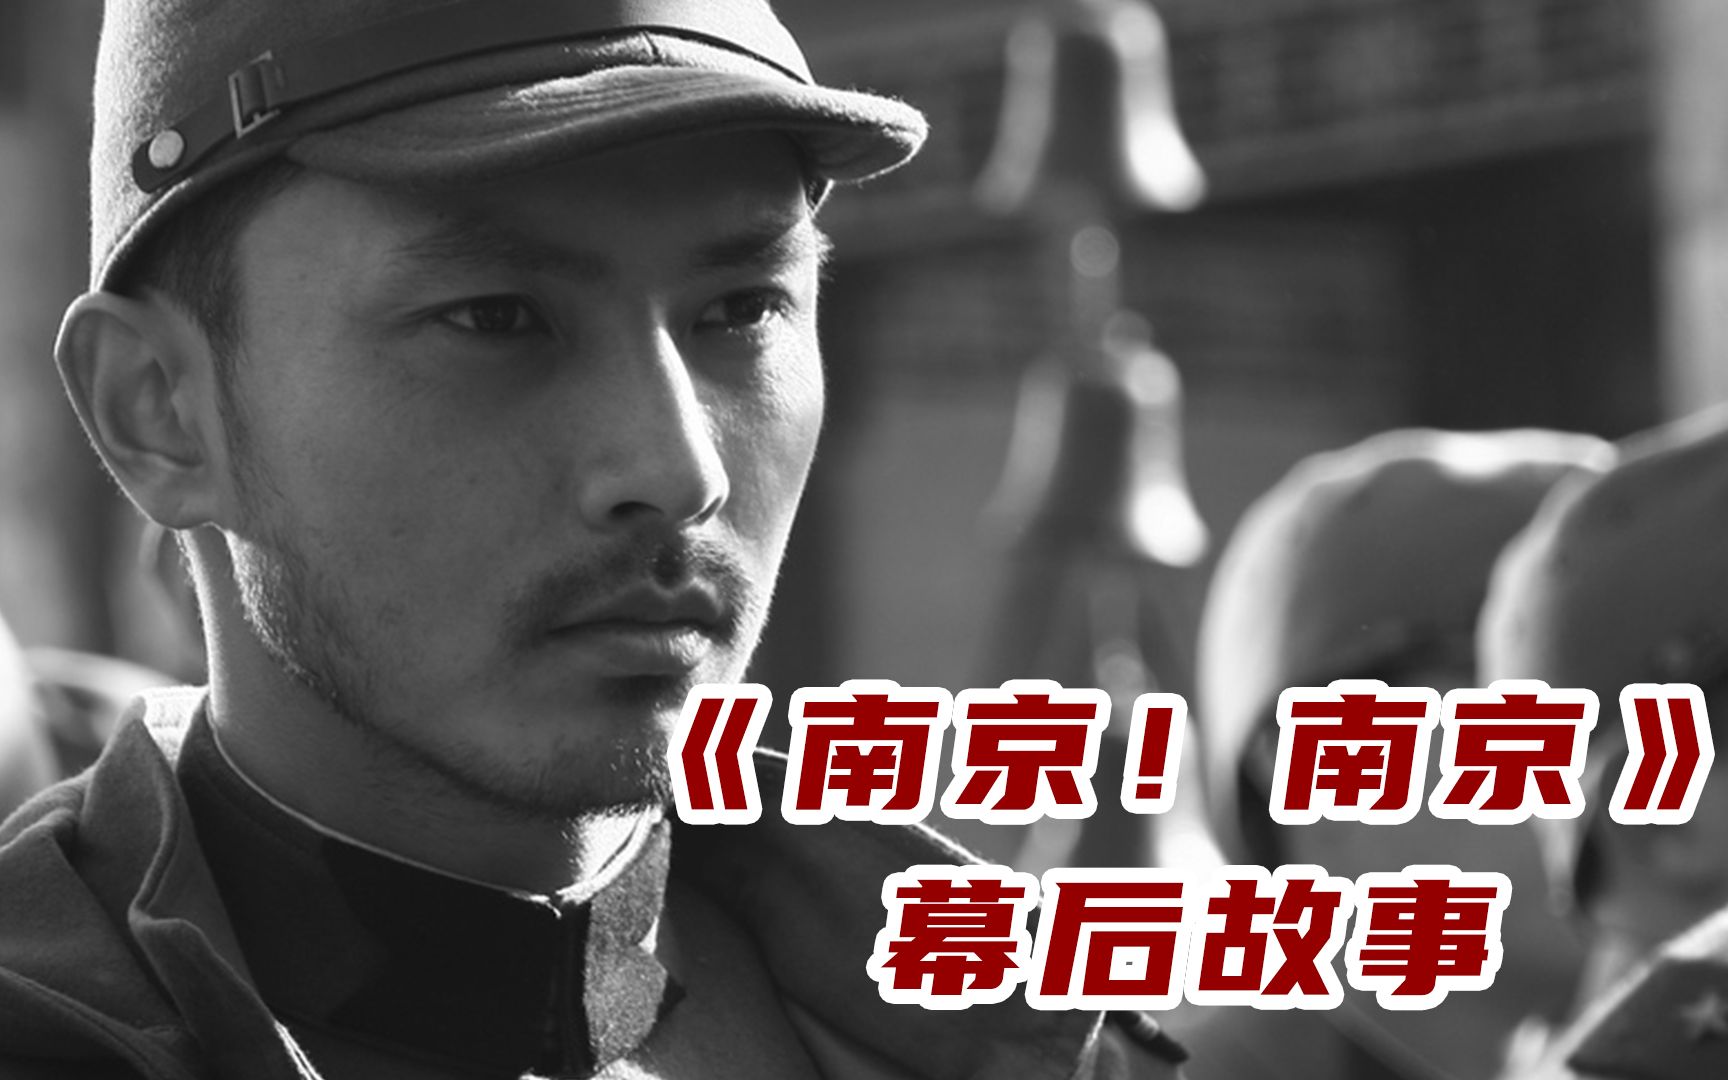 在拍摄《南京南京》时：拍摄过程过于压抑，日本演员一度崩溃！